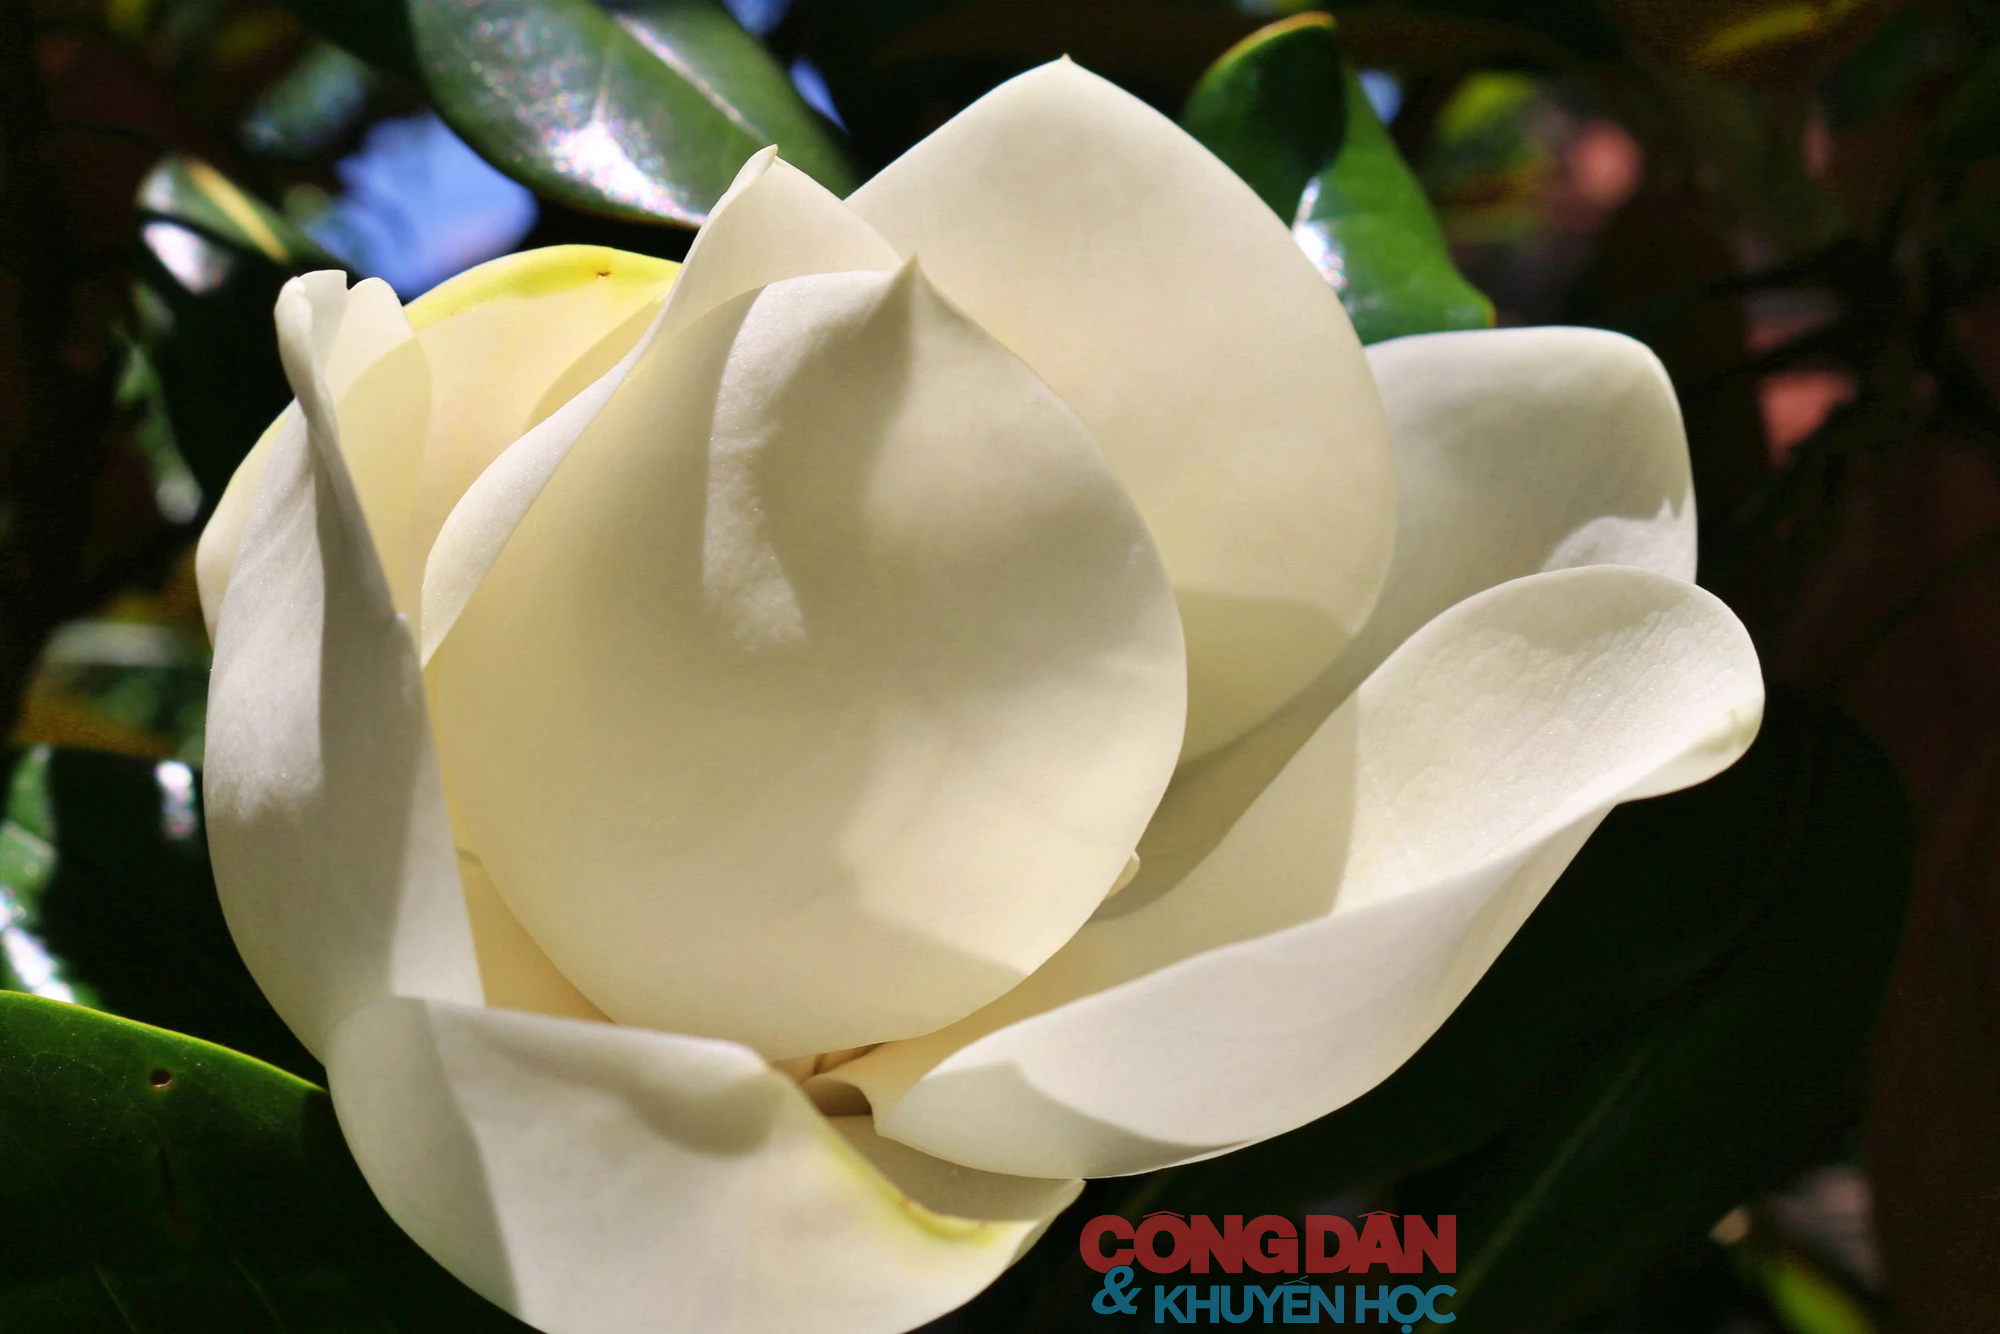 Chiêm ngưỡng sắc trắng tinh khiết hoa sen đất chùa Bối Khê  - Ảnh 8.